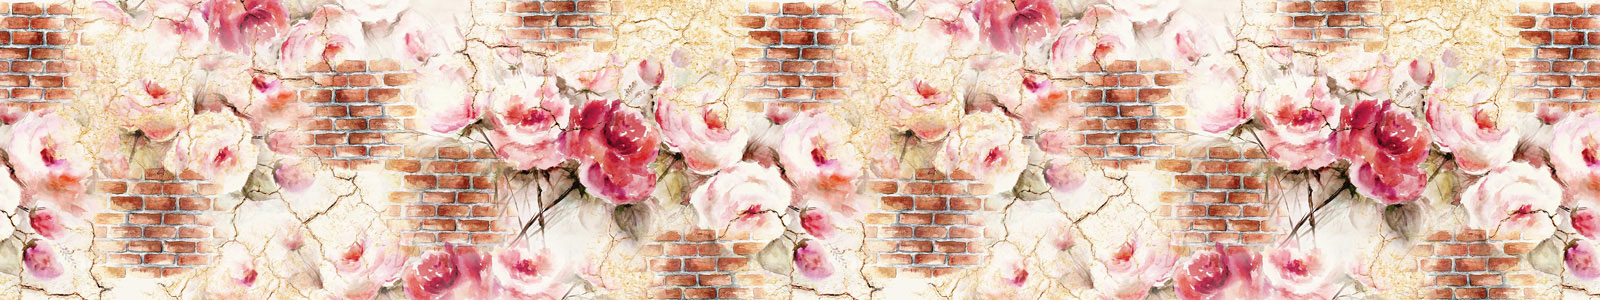 №5944 - Акварельные цветы на стене с трещинами